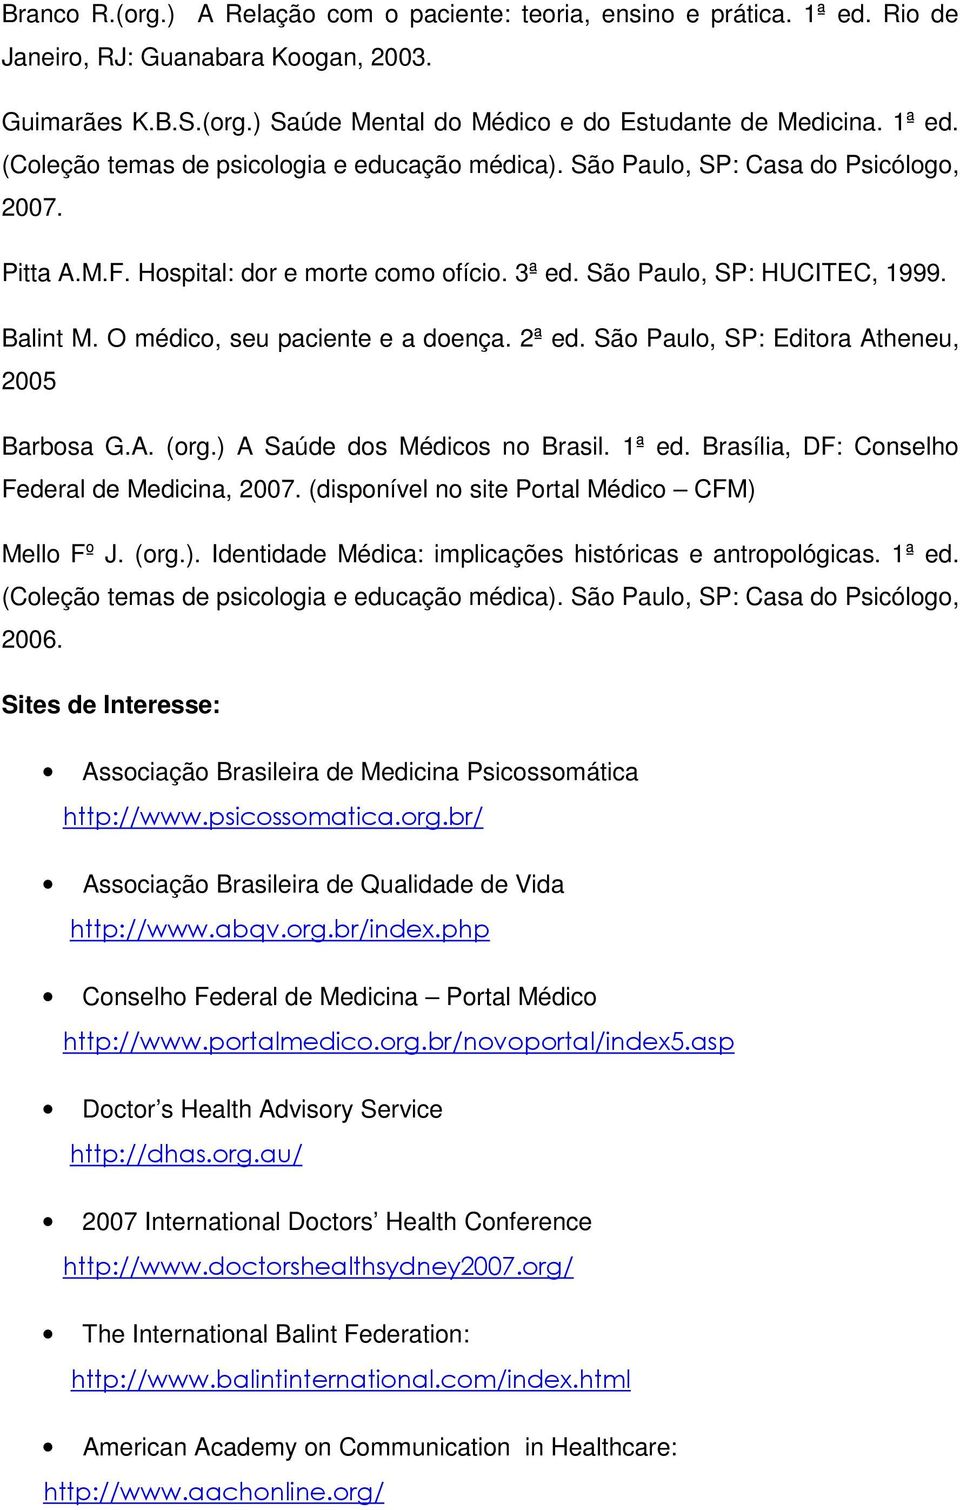 São Paulo, SP: Editora Atheneu, 2005 Barbosa G.A. (org.) A Saúde dos Médicos no Brasil. 1ª ed. Brasília, DF: Conselho Federal de Medicina, 2007. (disponível no site Portal Médico CFM) Mello Fº J.